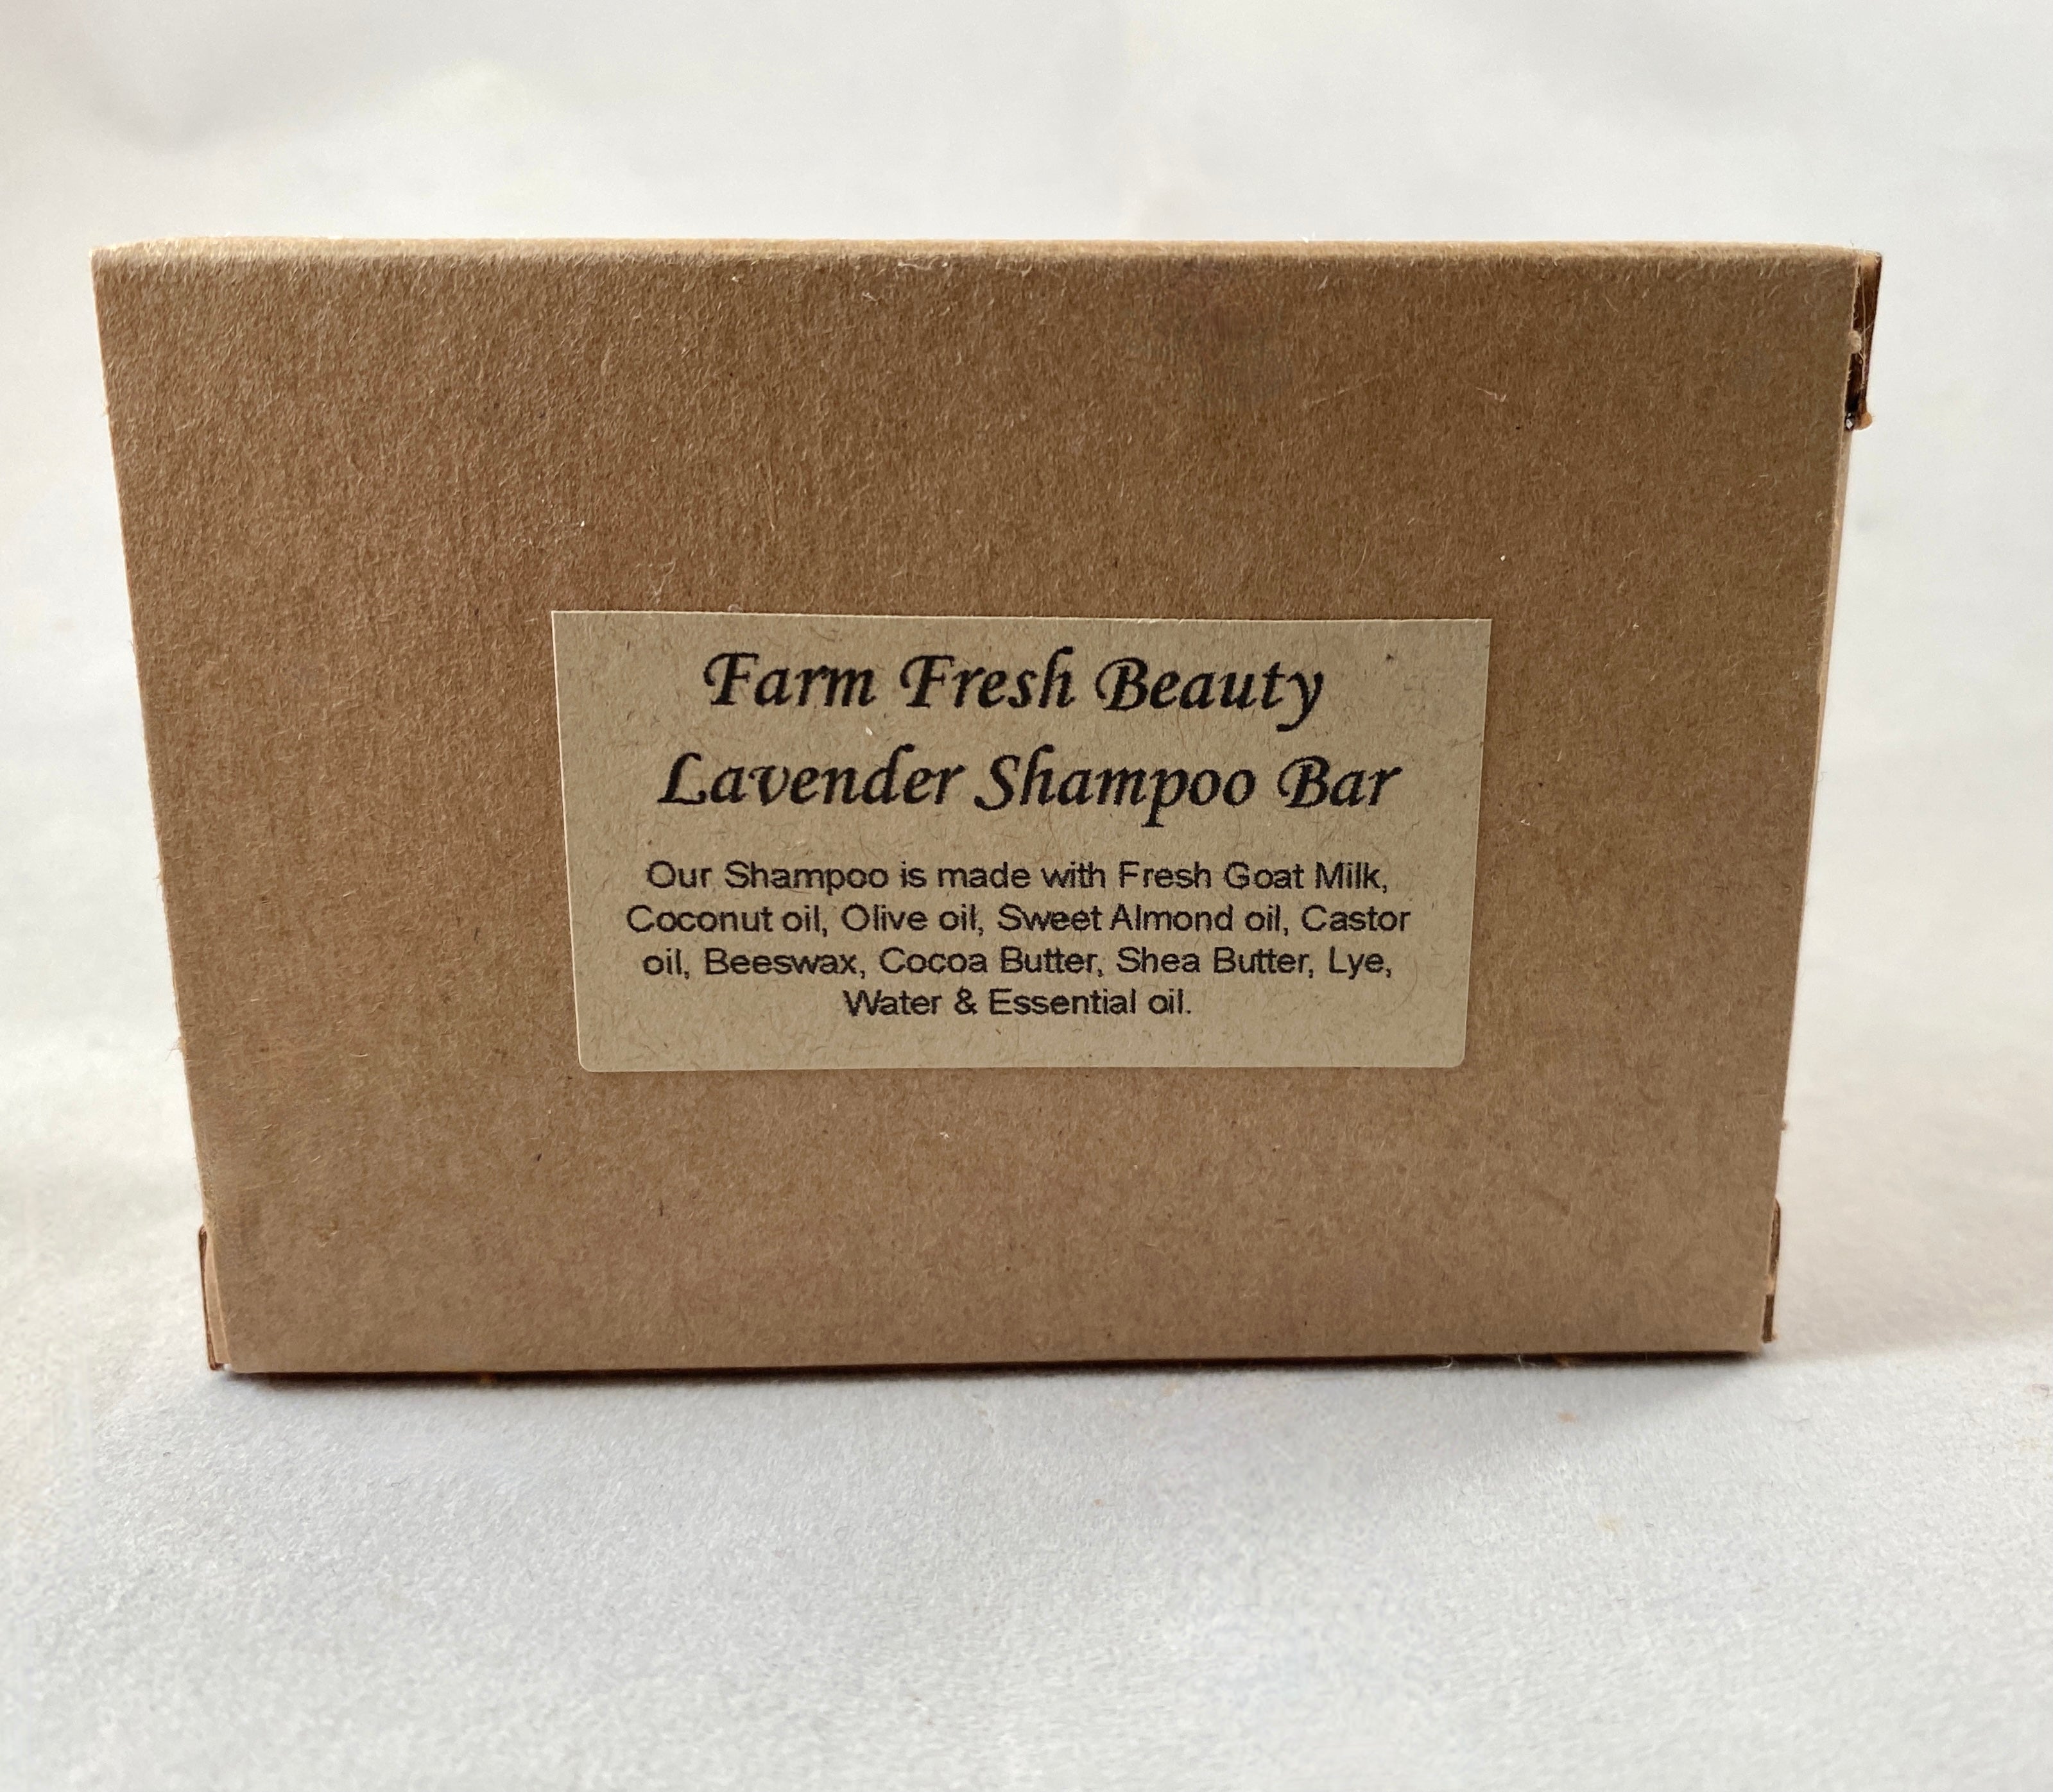 Farm Fresh Beauty | Lavender Shampoo Bar | Goat Milk Shampoo Bar